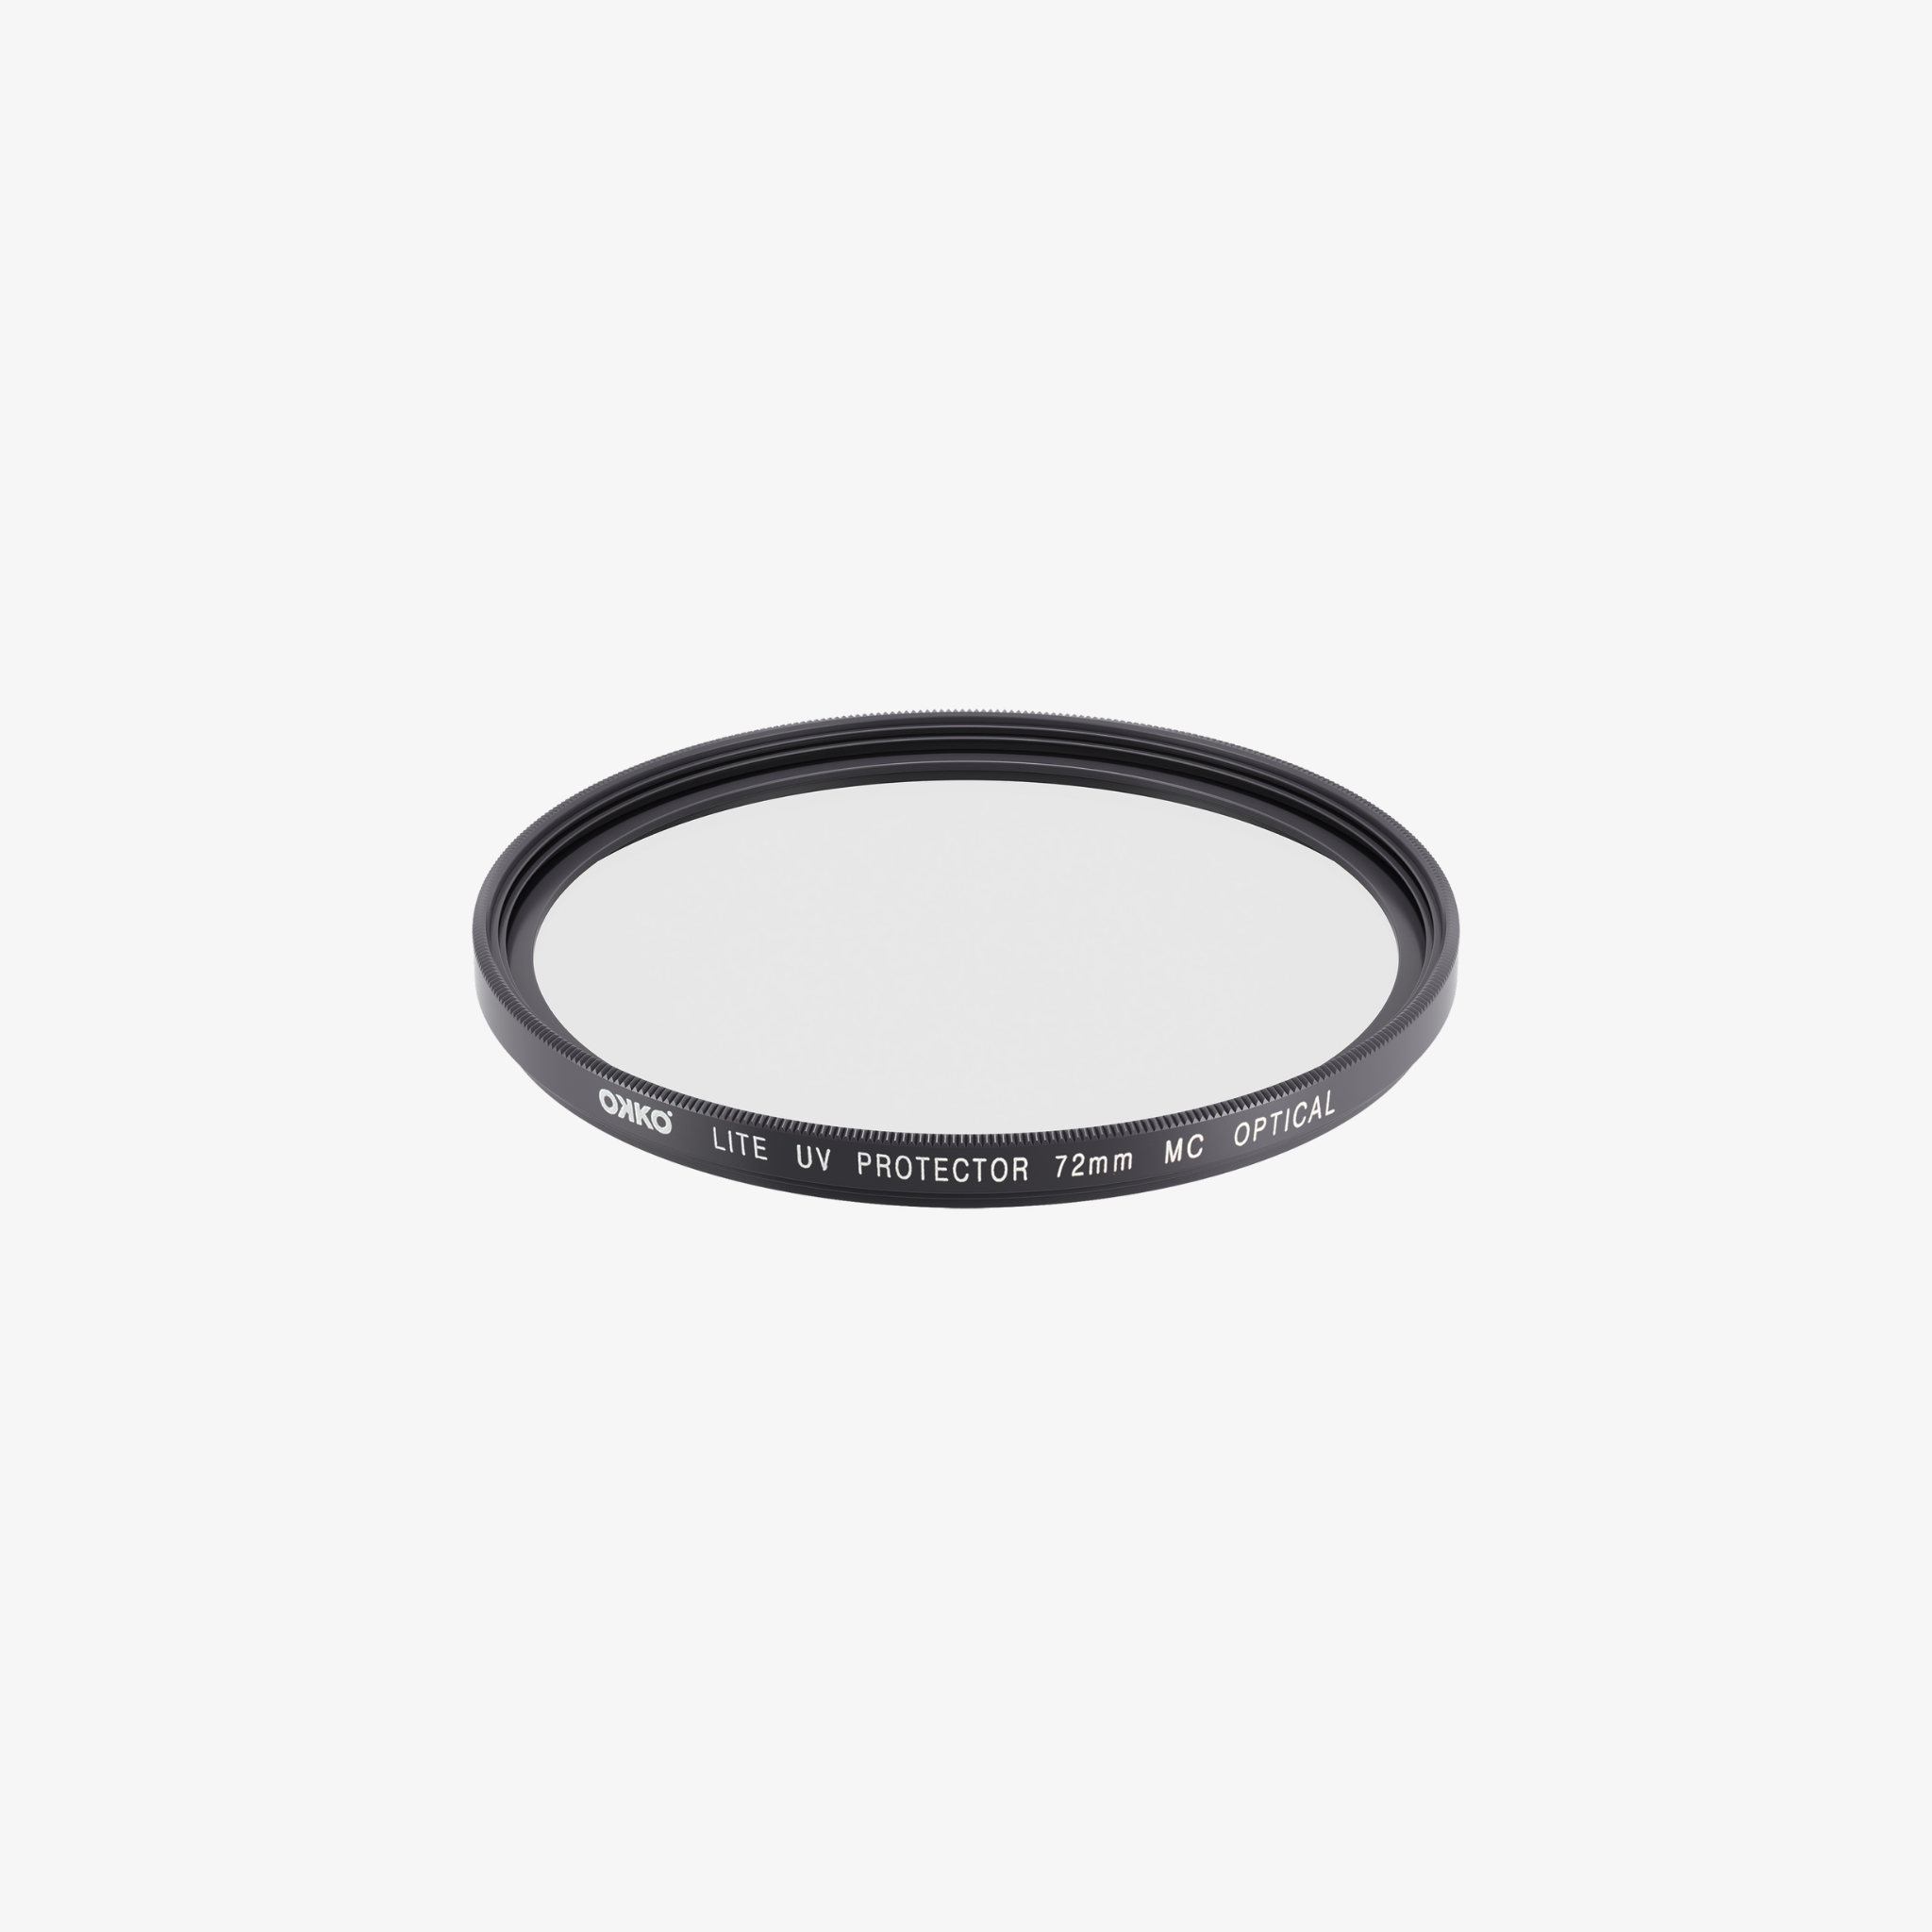 OKKO (Lite) UV Protection Lens Filter